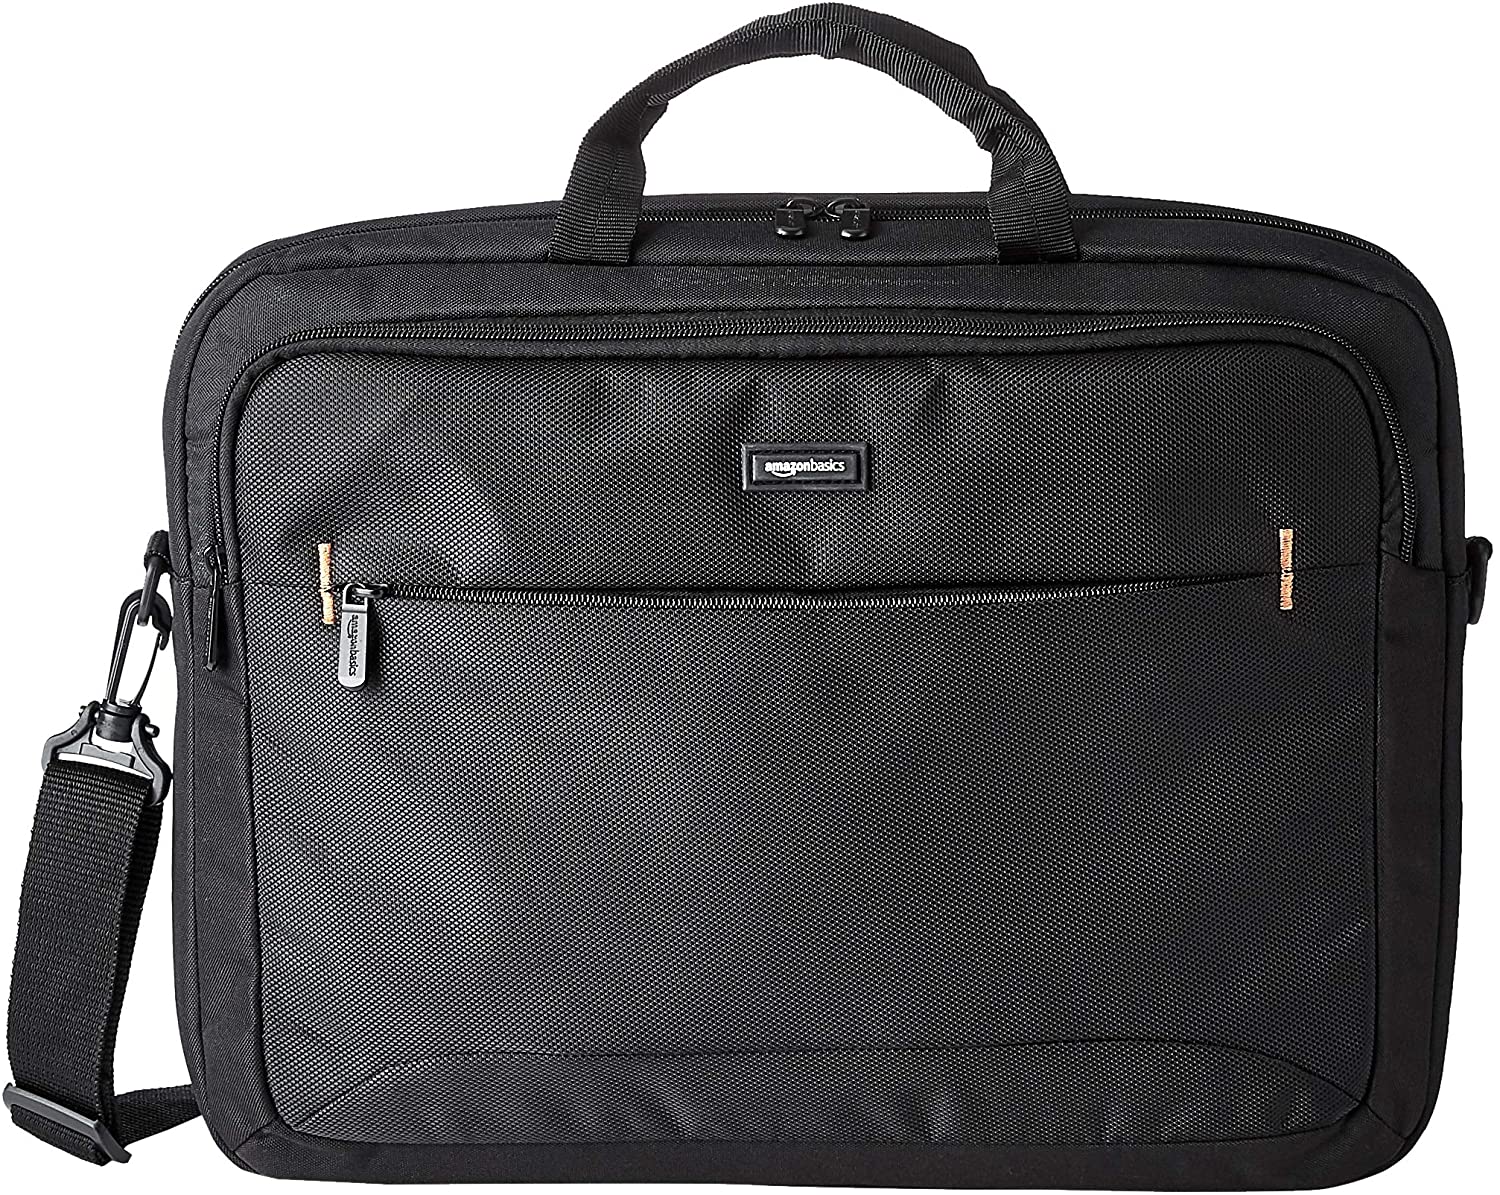 Amazon Basics Laptop Bag For Stylish Guys